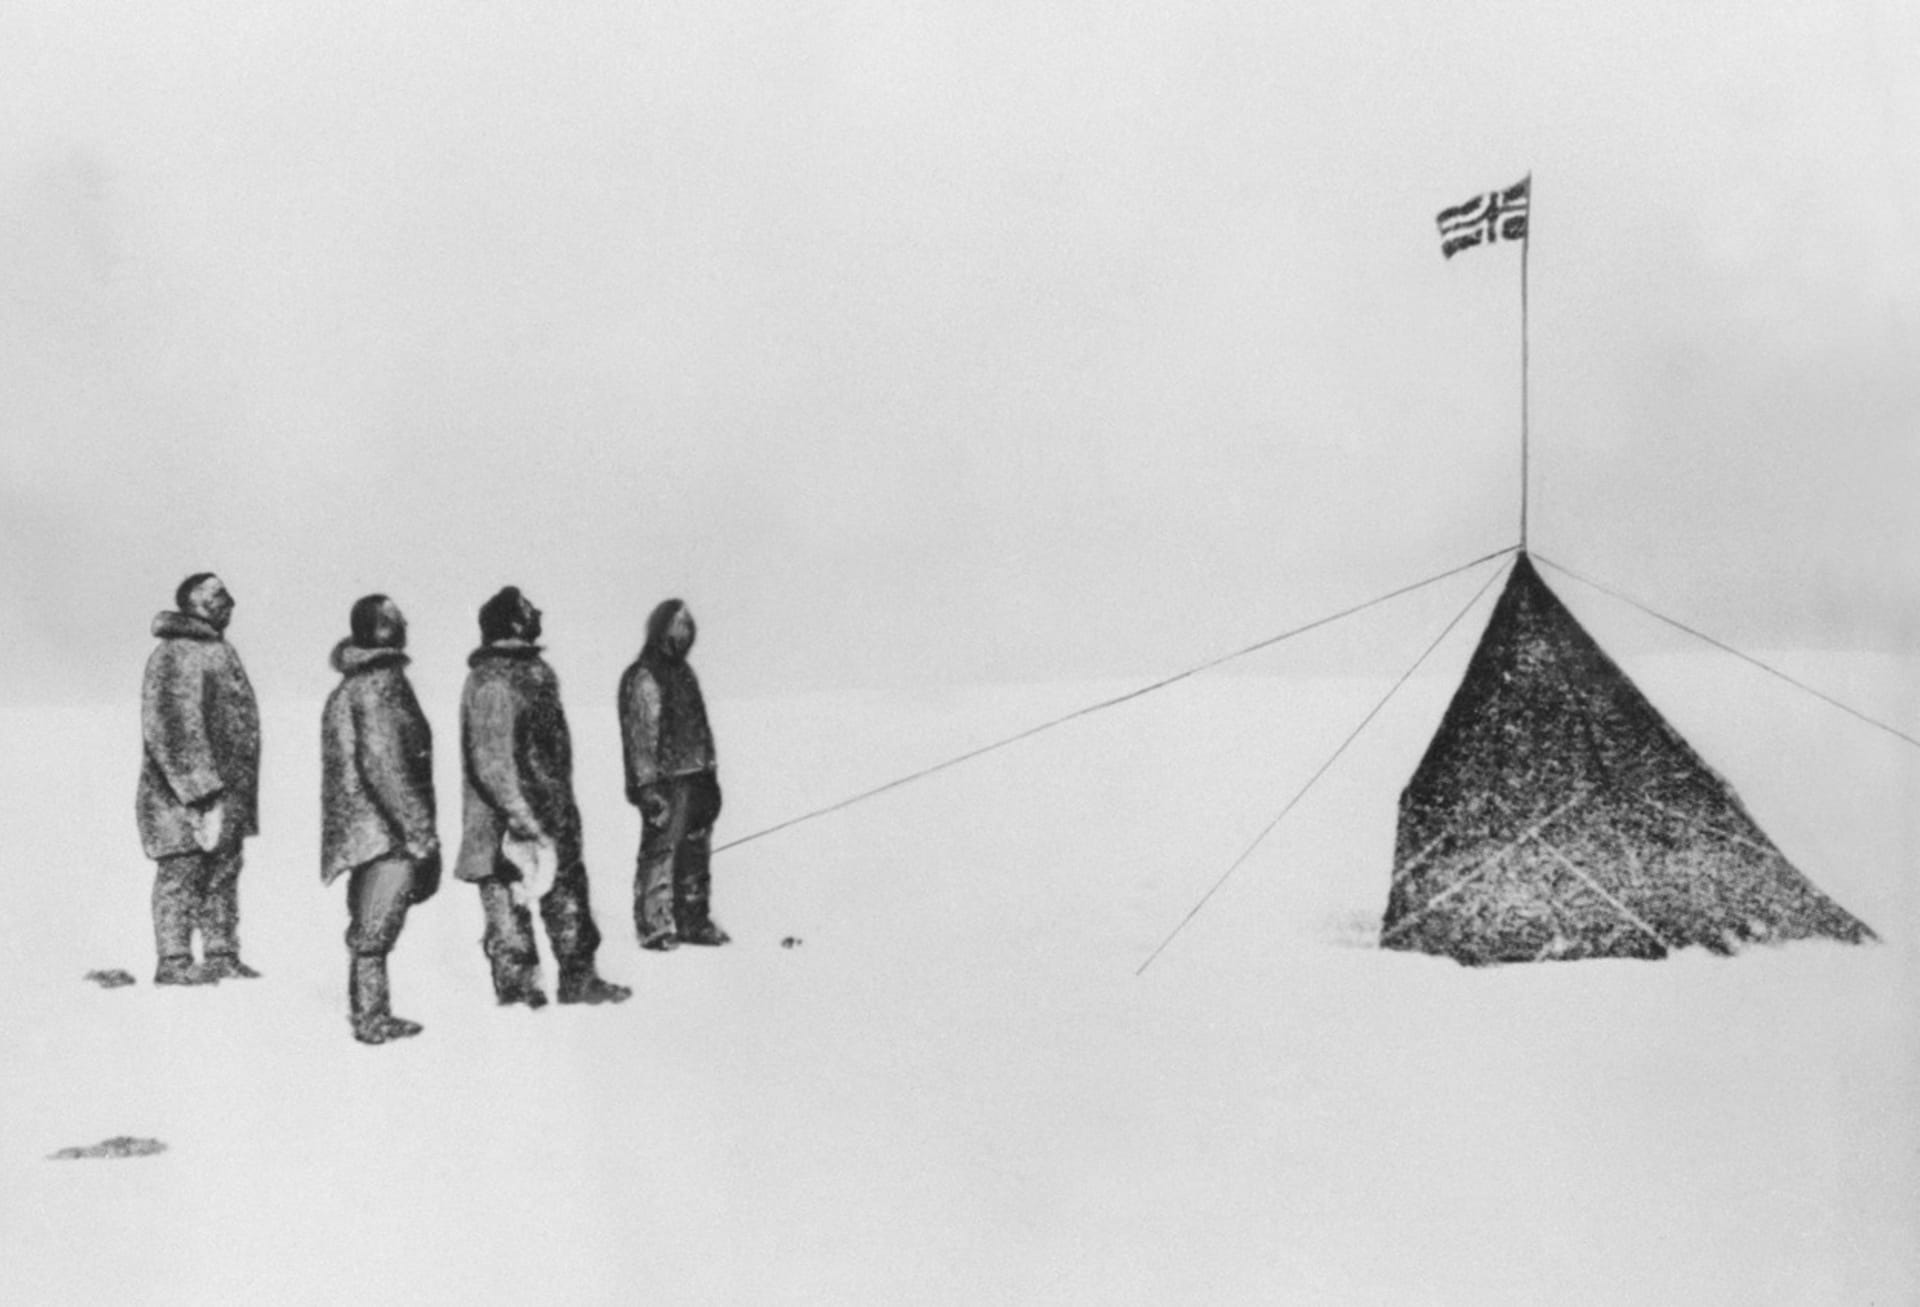 Amundsenova výprava na jižním pólu